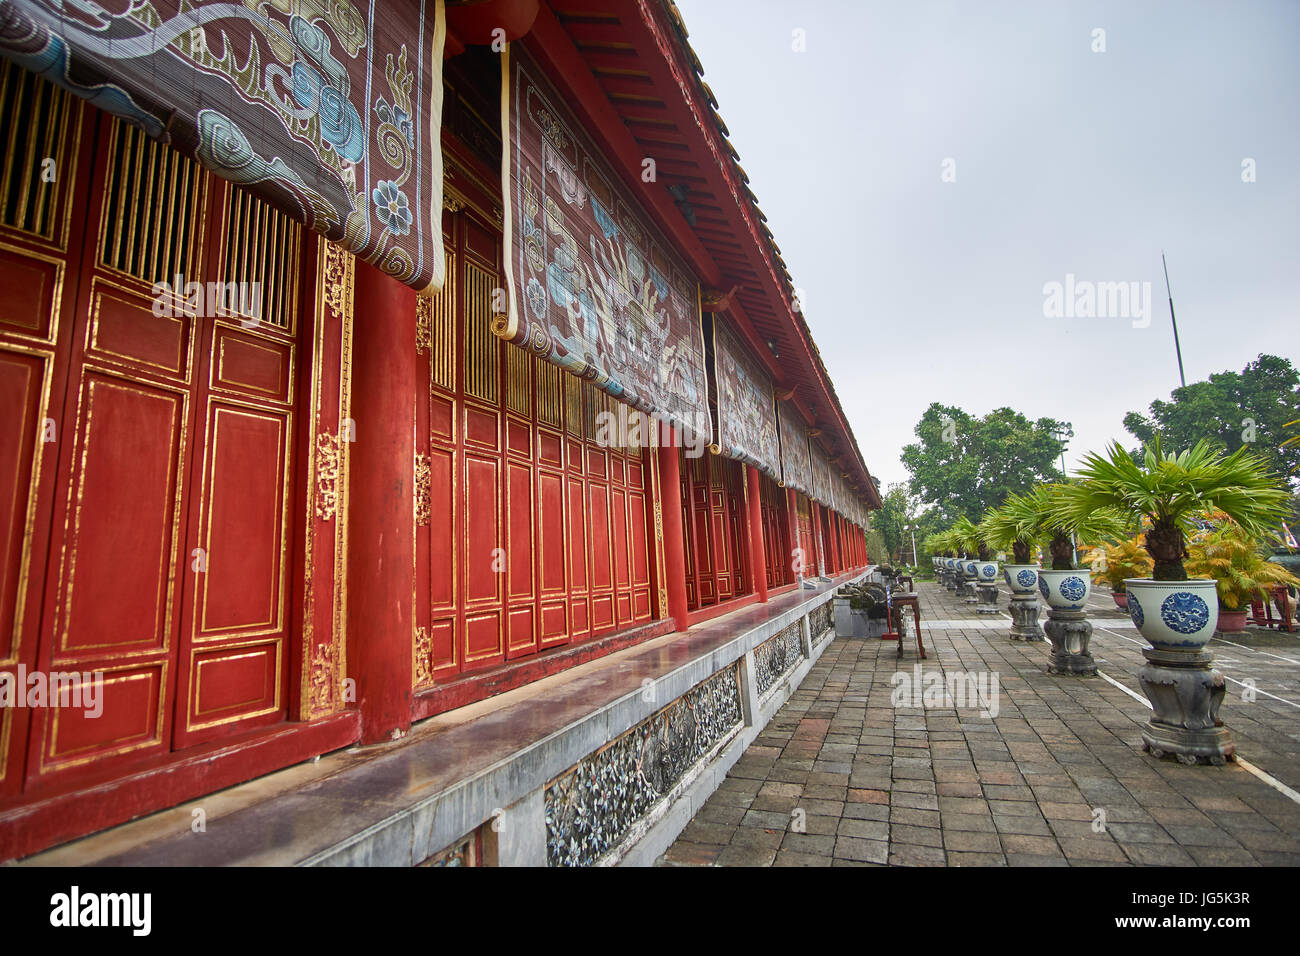 Tempel vietnamien traditionnel mur avec des peintures colorées dans la ville impériale de Hue, Vietnam. Banque D'Images